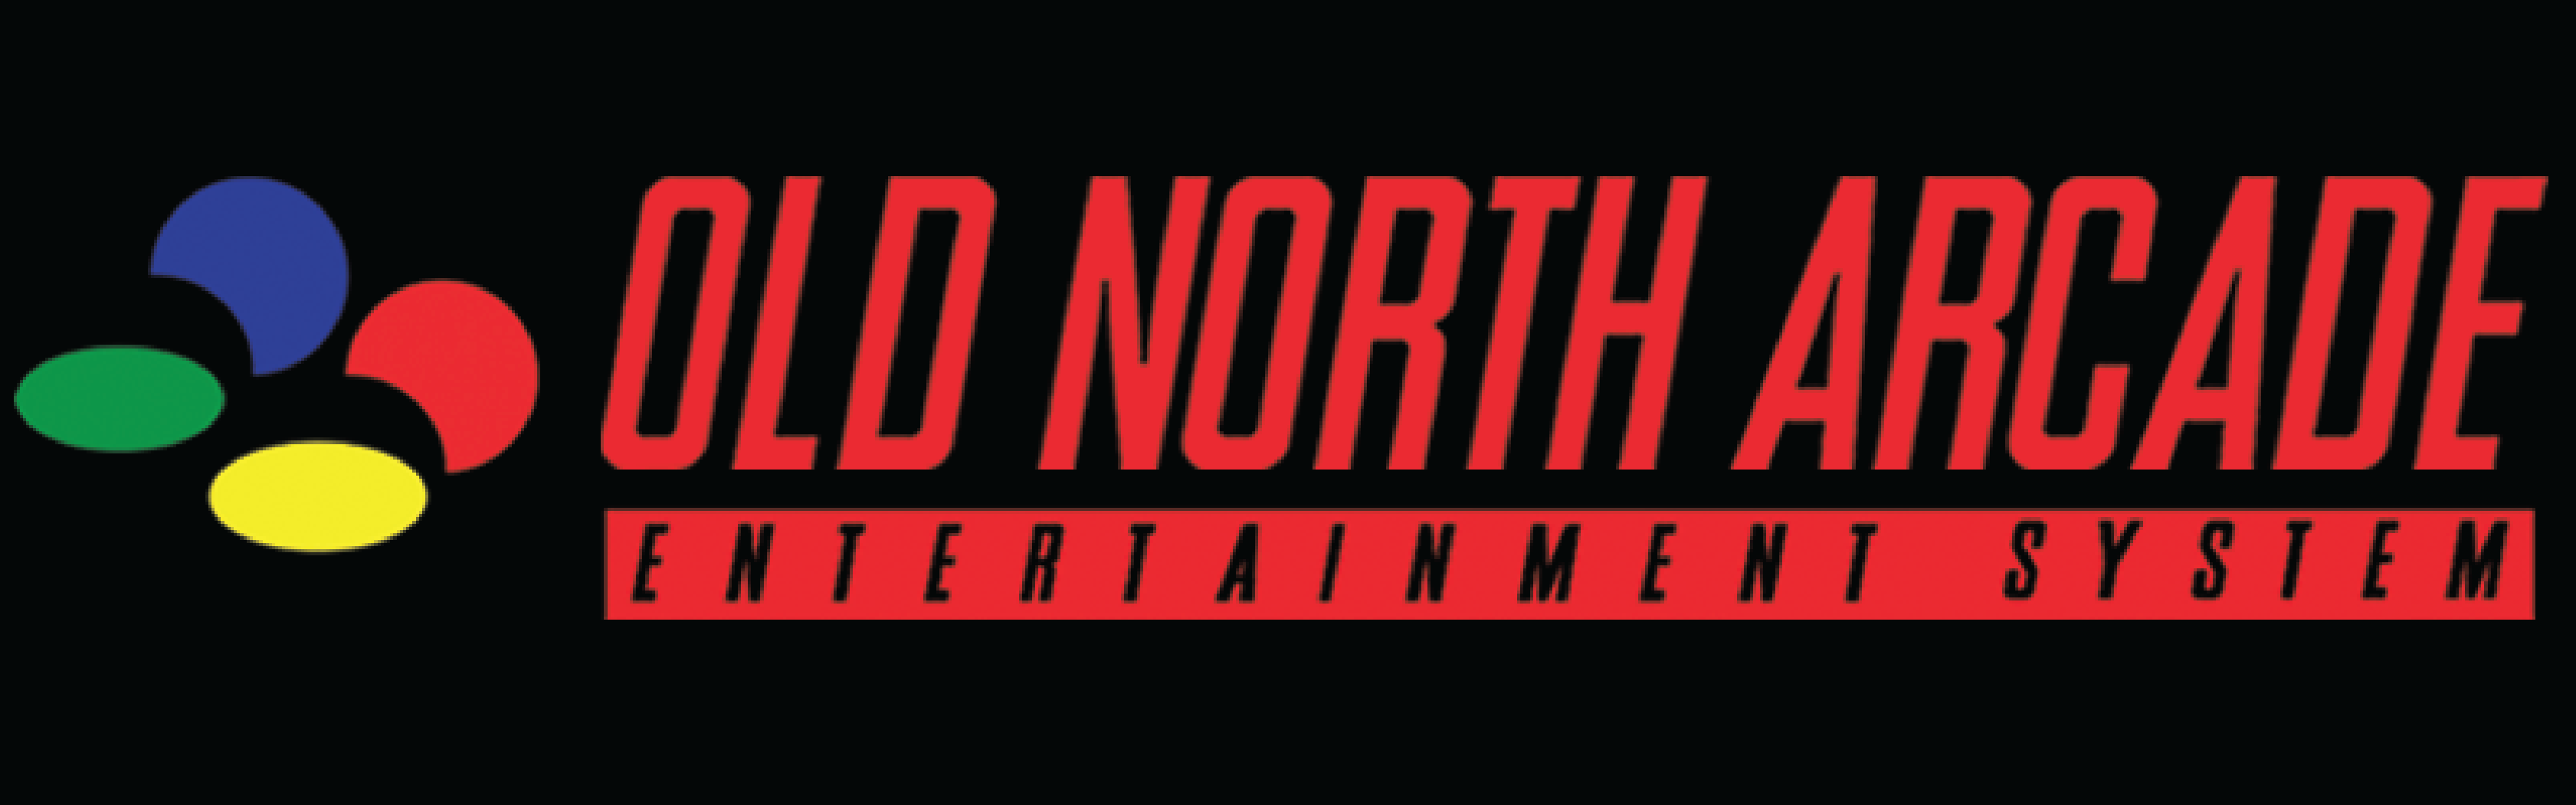 Old North Arcade logo